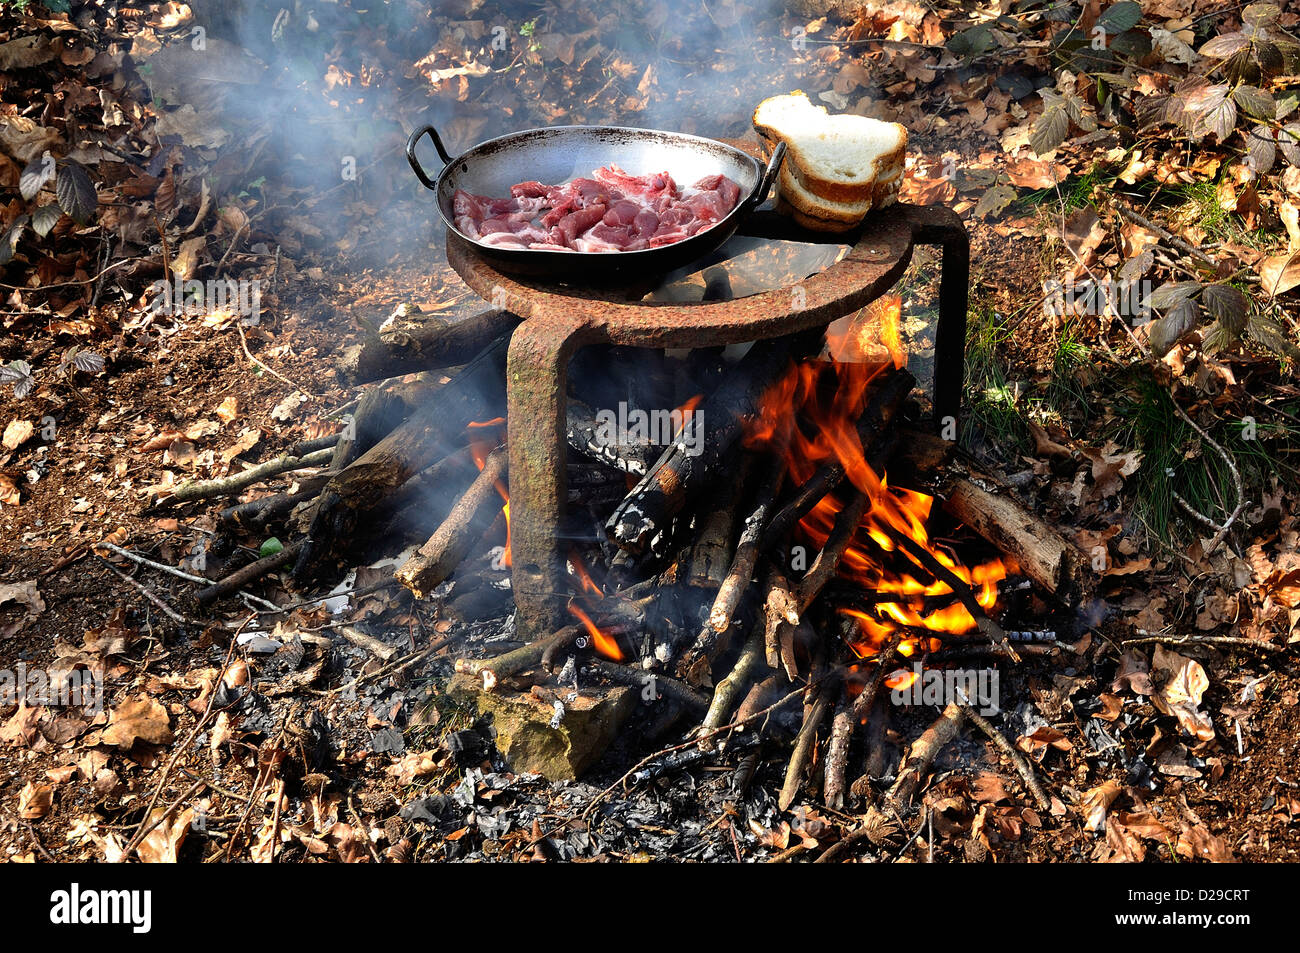 La cottura della carne con una griglia in un bosco, campagna del nord (Mayenne Paese della Loira, Francia). Foto Stock